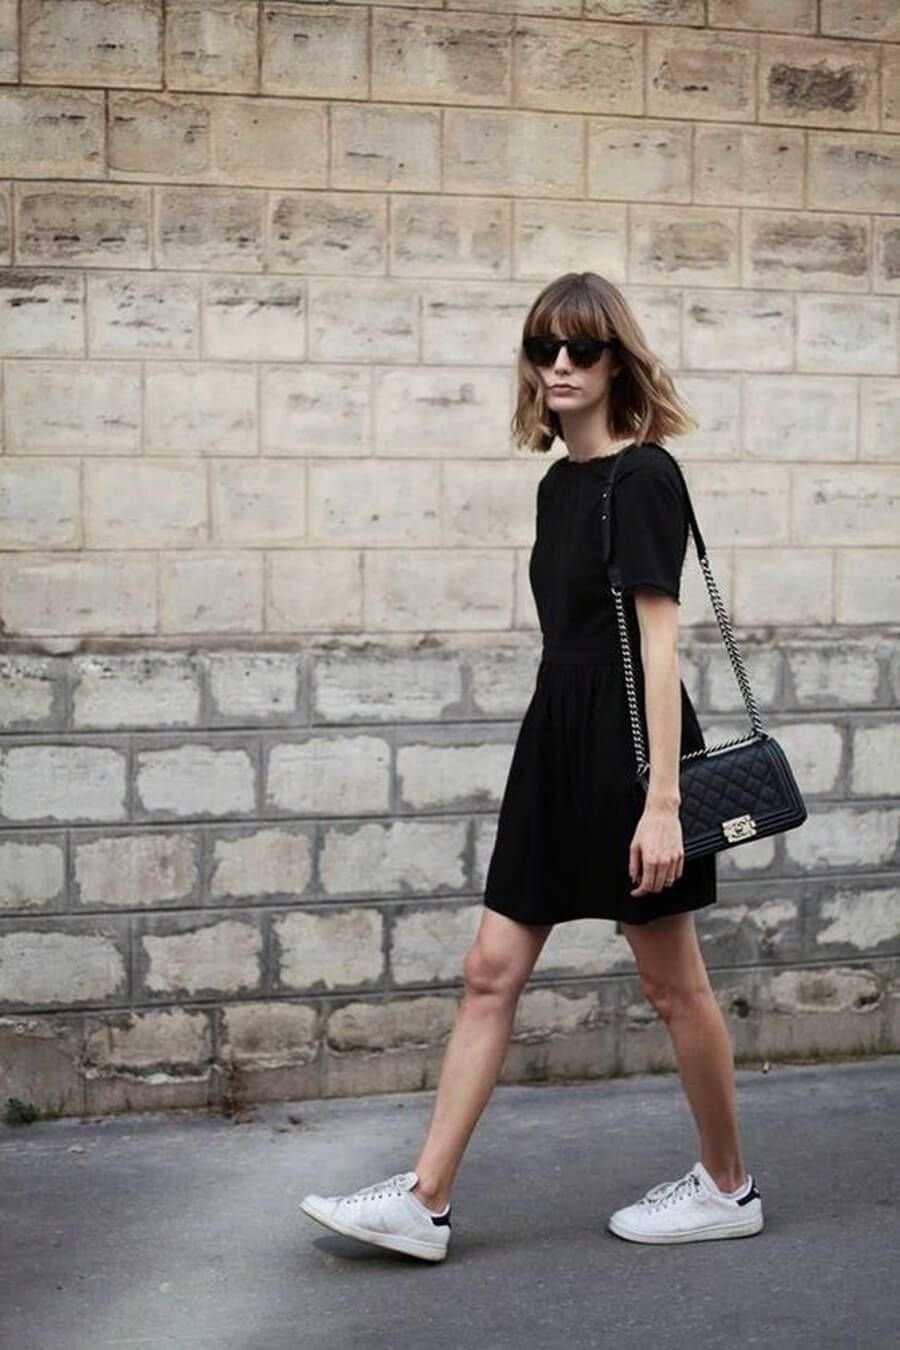 Черное маленькое платье для женщин: фото стильных моделей